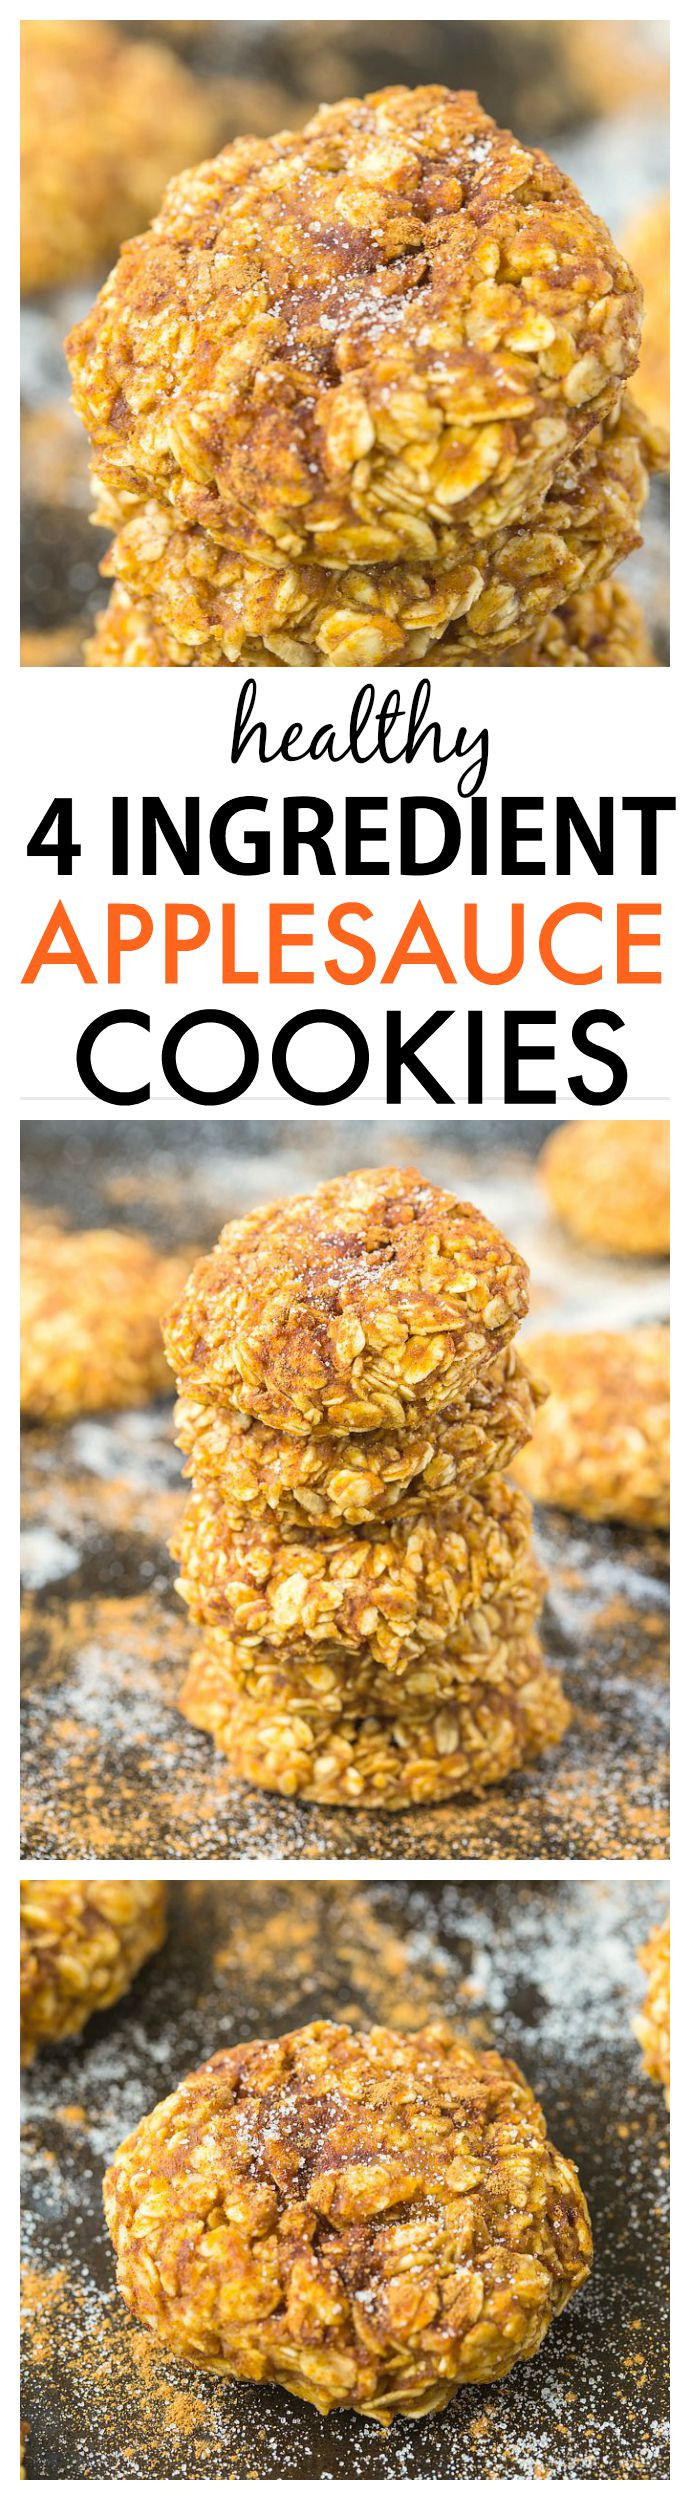 Healthy Applesauce Cookies
 Healthy 4 Ingre nt Applesauce Cookies